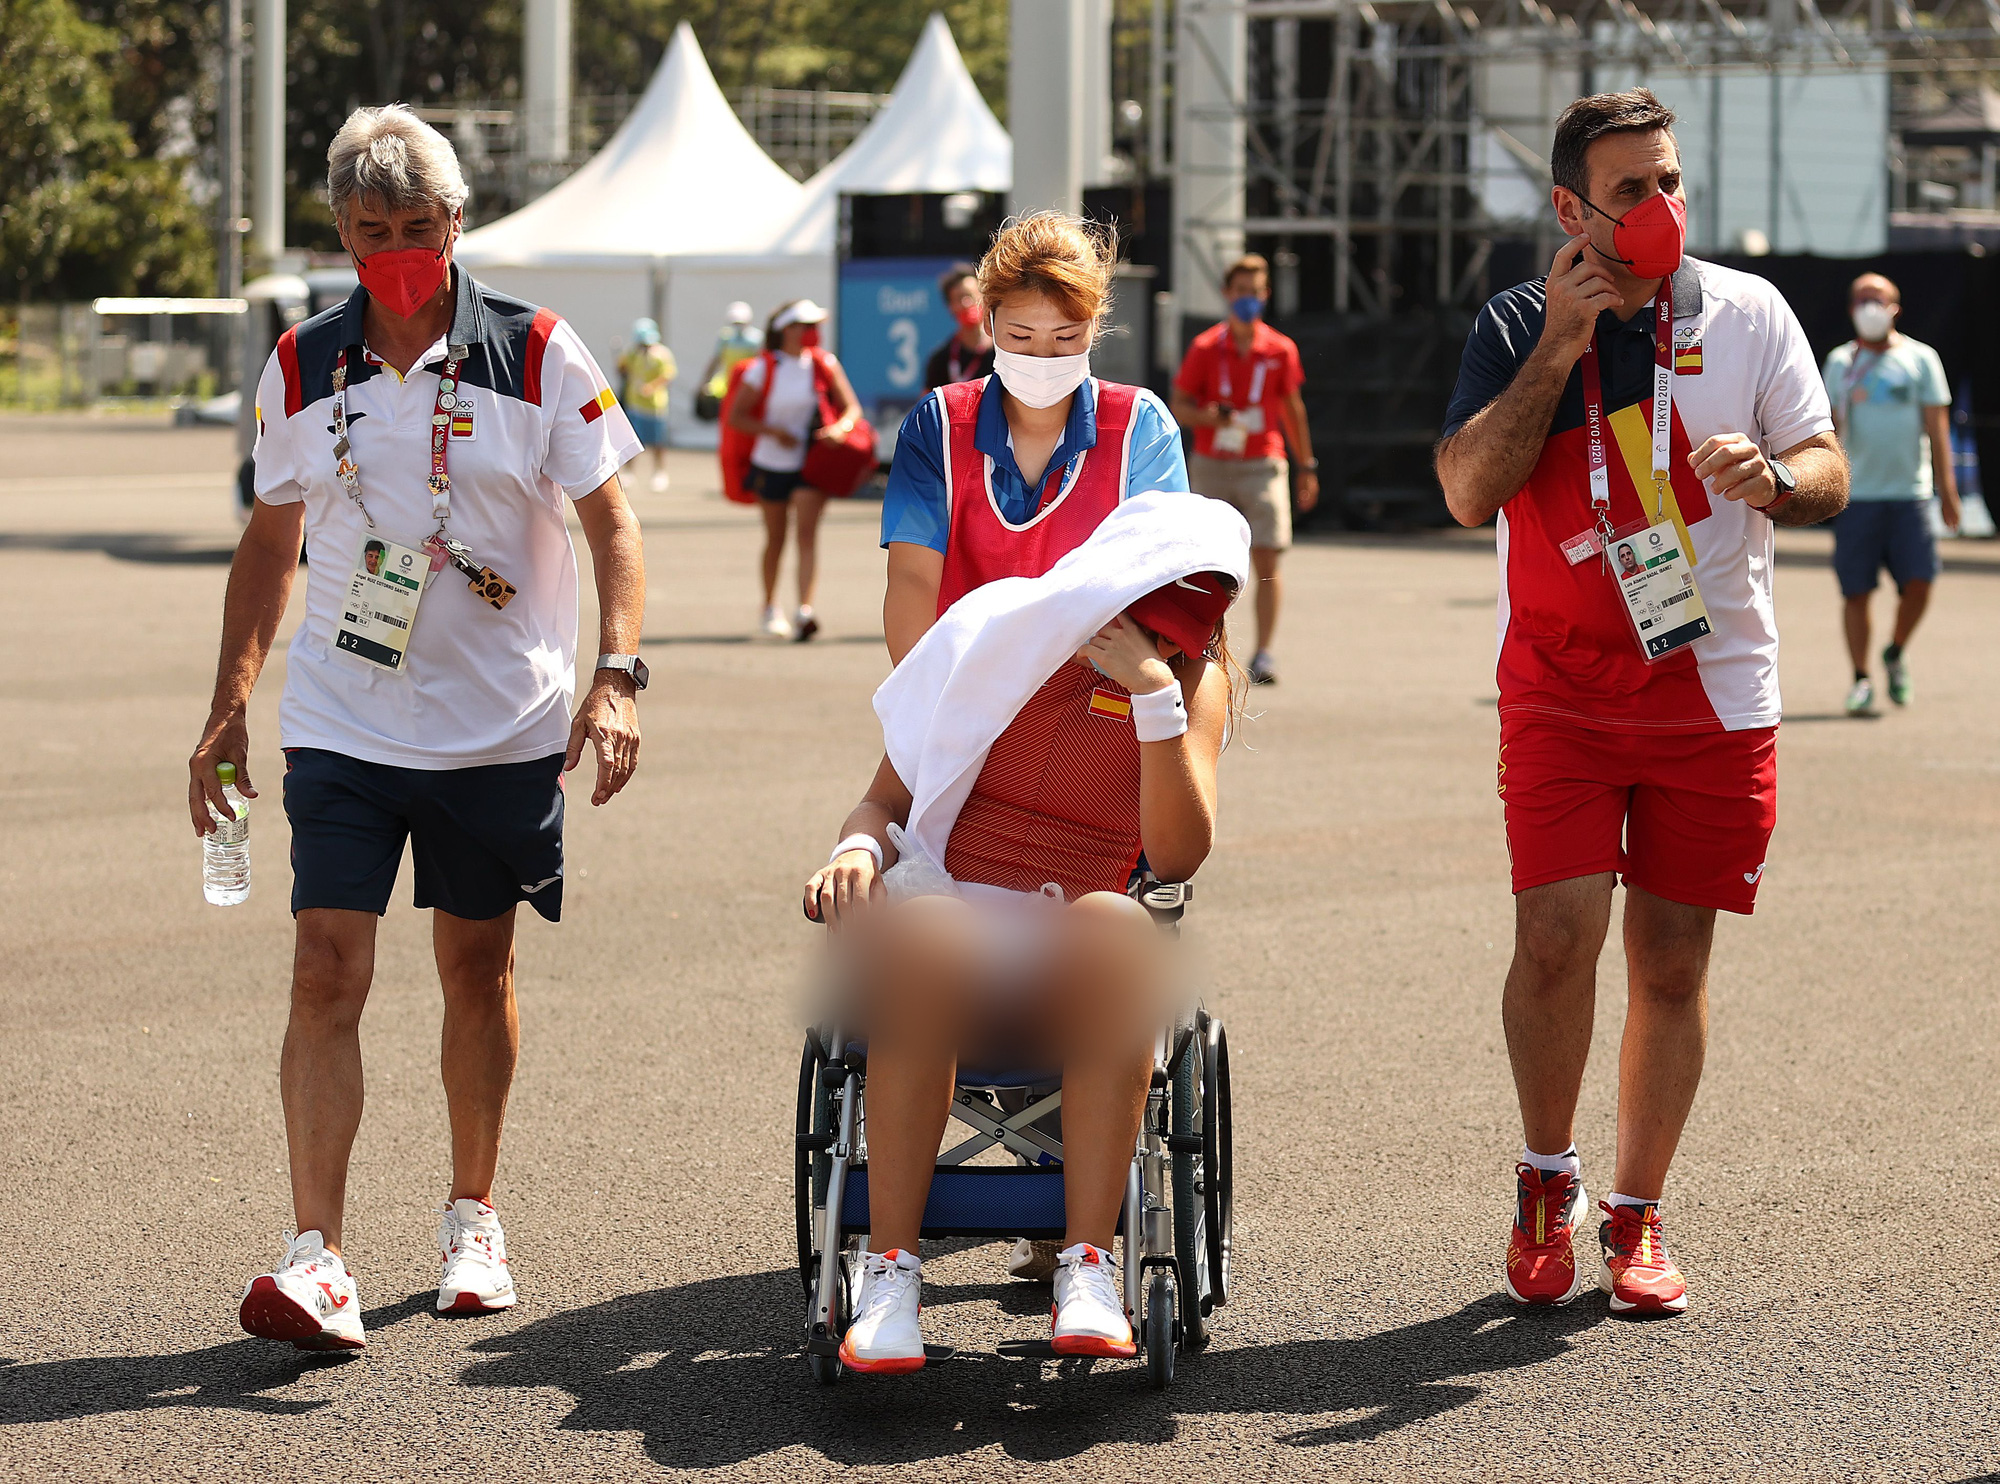 Olympic 2020: Tay vợt người Tây Ban Nha rời sân bằng xe lăn do... sốc nhiệt - Ảnh 2.